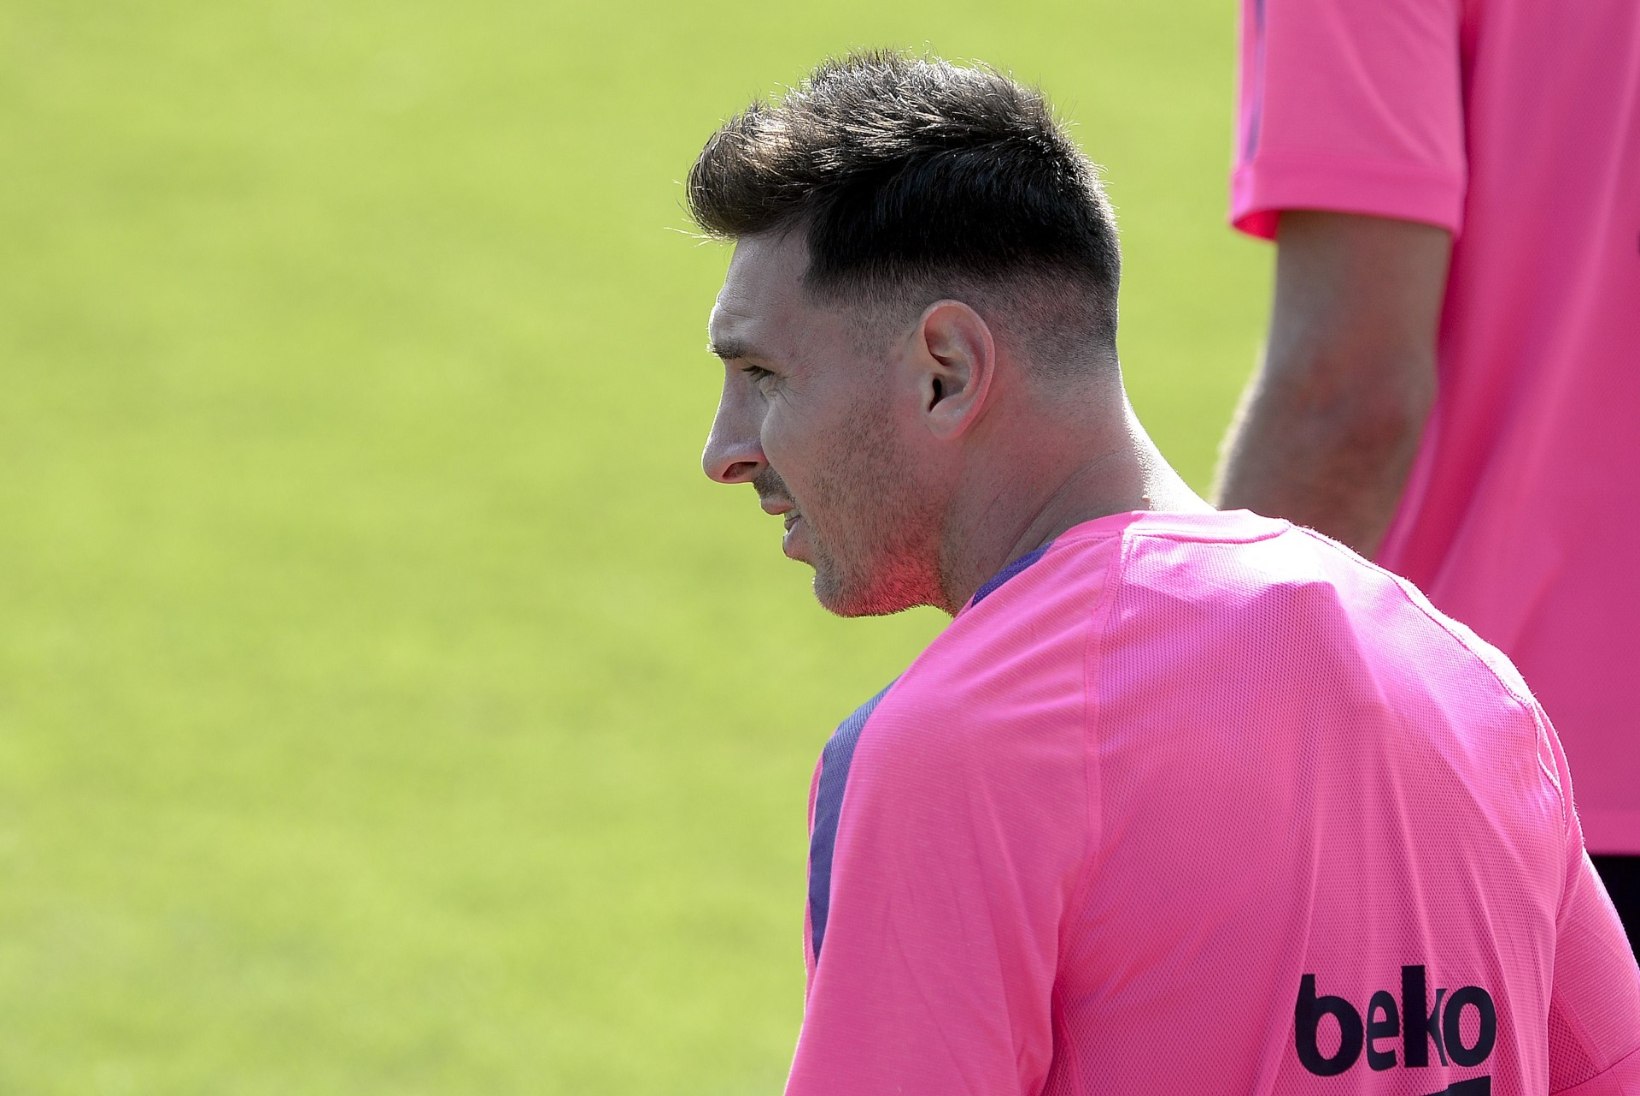 FOTOD: Messi ahvib Ronaldot? Argentiina superstaaril on esimest korda elus moodne soeng